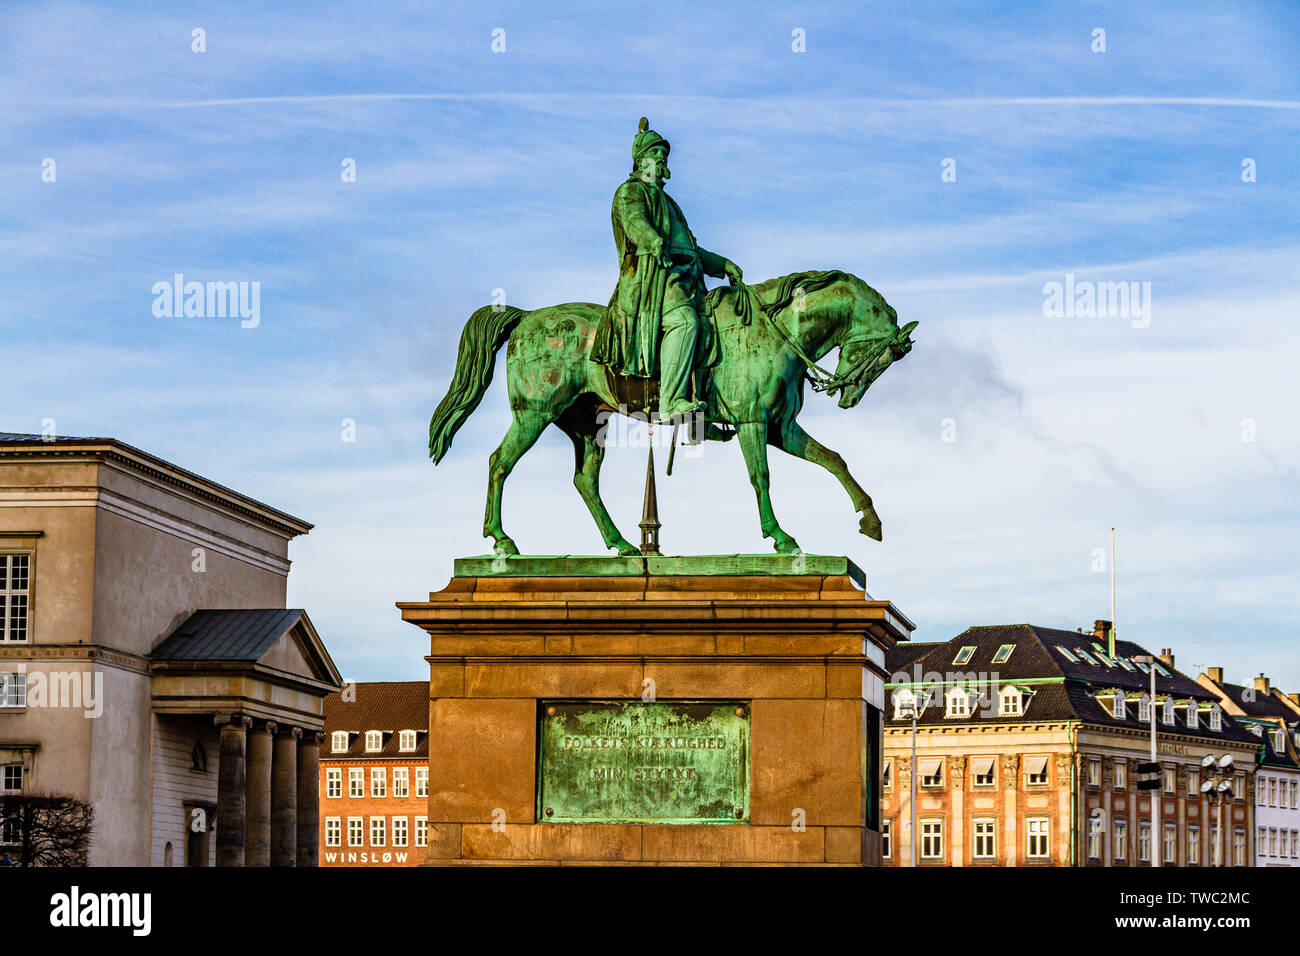 La statua equestre in bronzo di Re Frederik VII di Danimarca al di fuori del Palazzo Christiansborg nel centro di Copenhagen, Danimarca. Gennaio 2019. Foto Stock